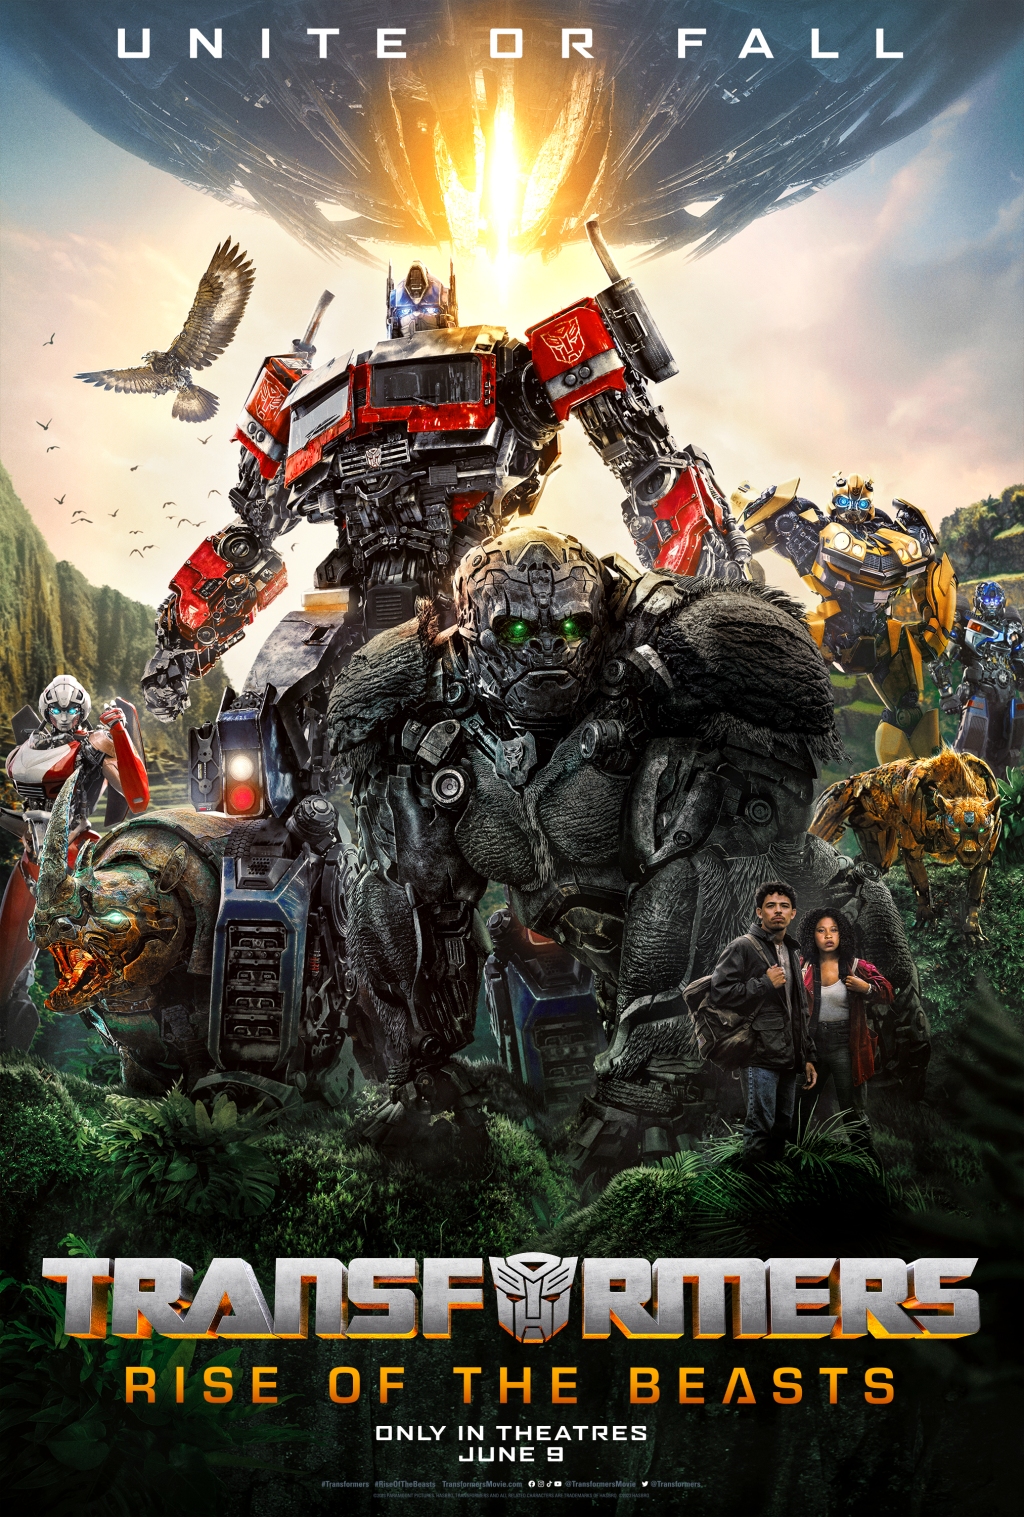 Bom tấn &quot;Transformers: Rise of the Beasts&quot; tung trailer mới, gây cấn hơn bao giờ hết - Ảnh 3.